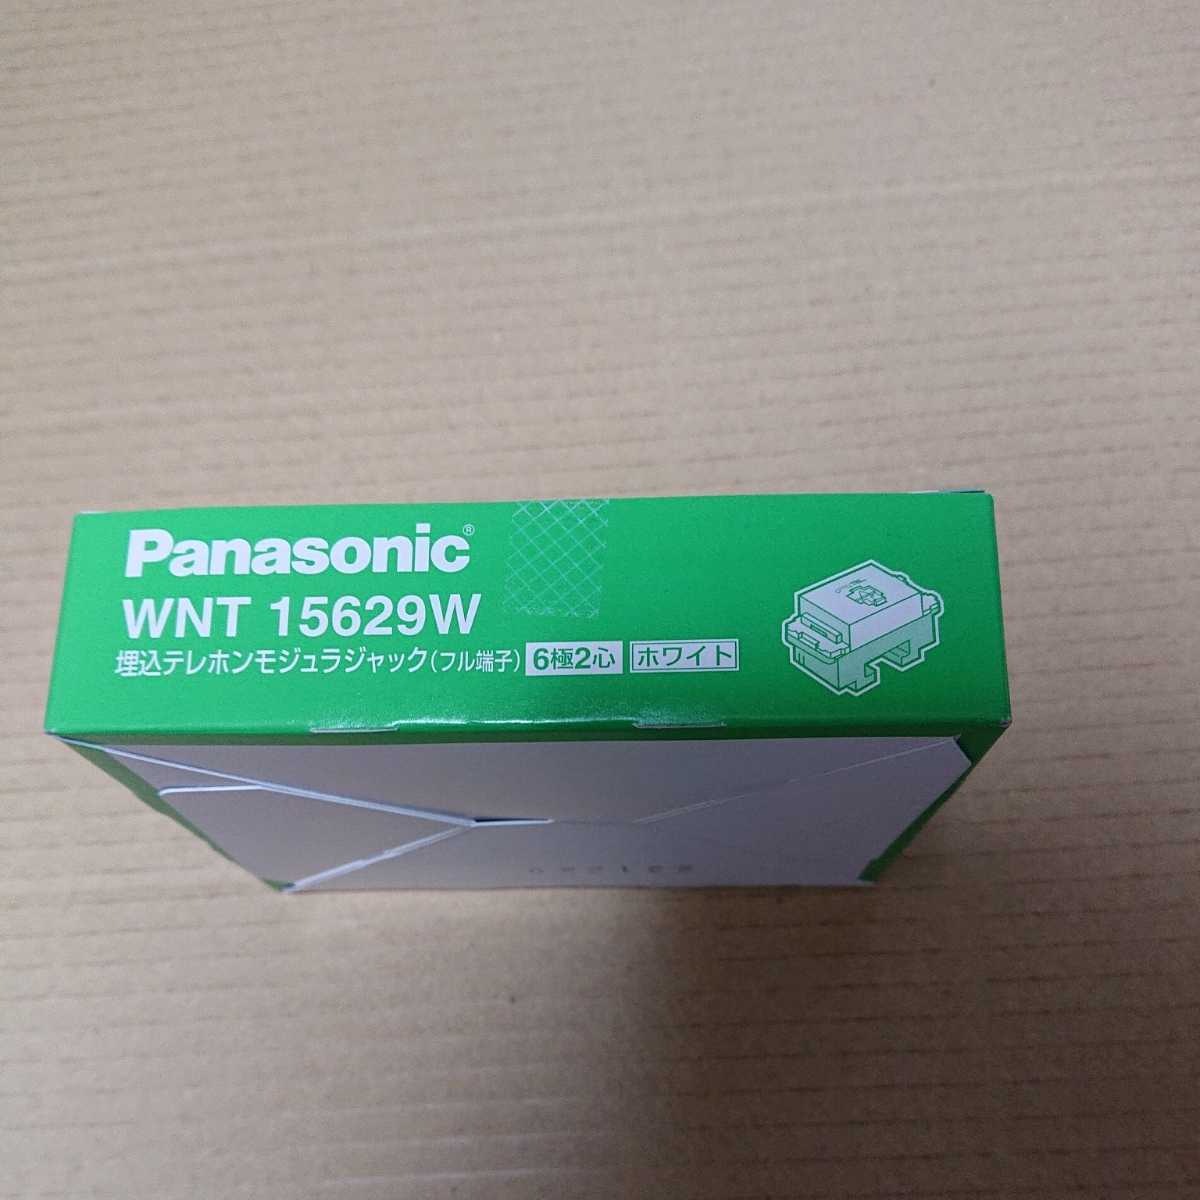 WNT15629W Panasonic. включено телефон mojula Jack (6 высшее 2 сердце )( полный терминал )( белый )